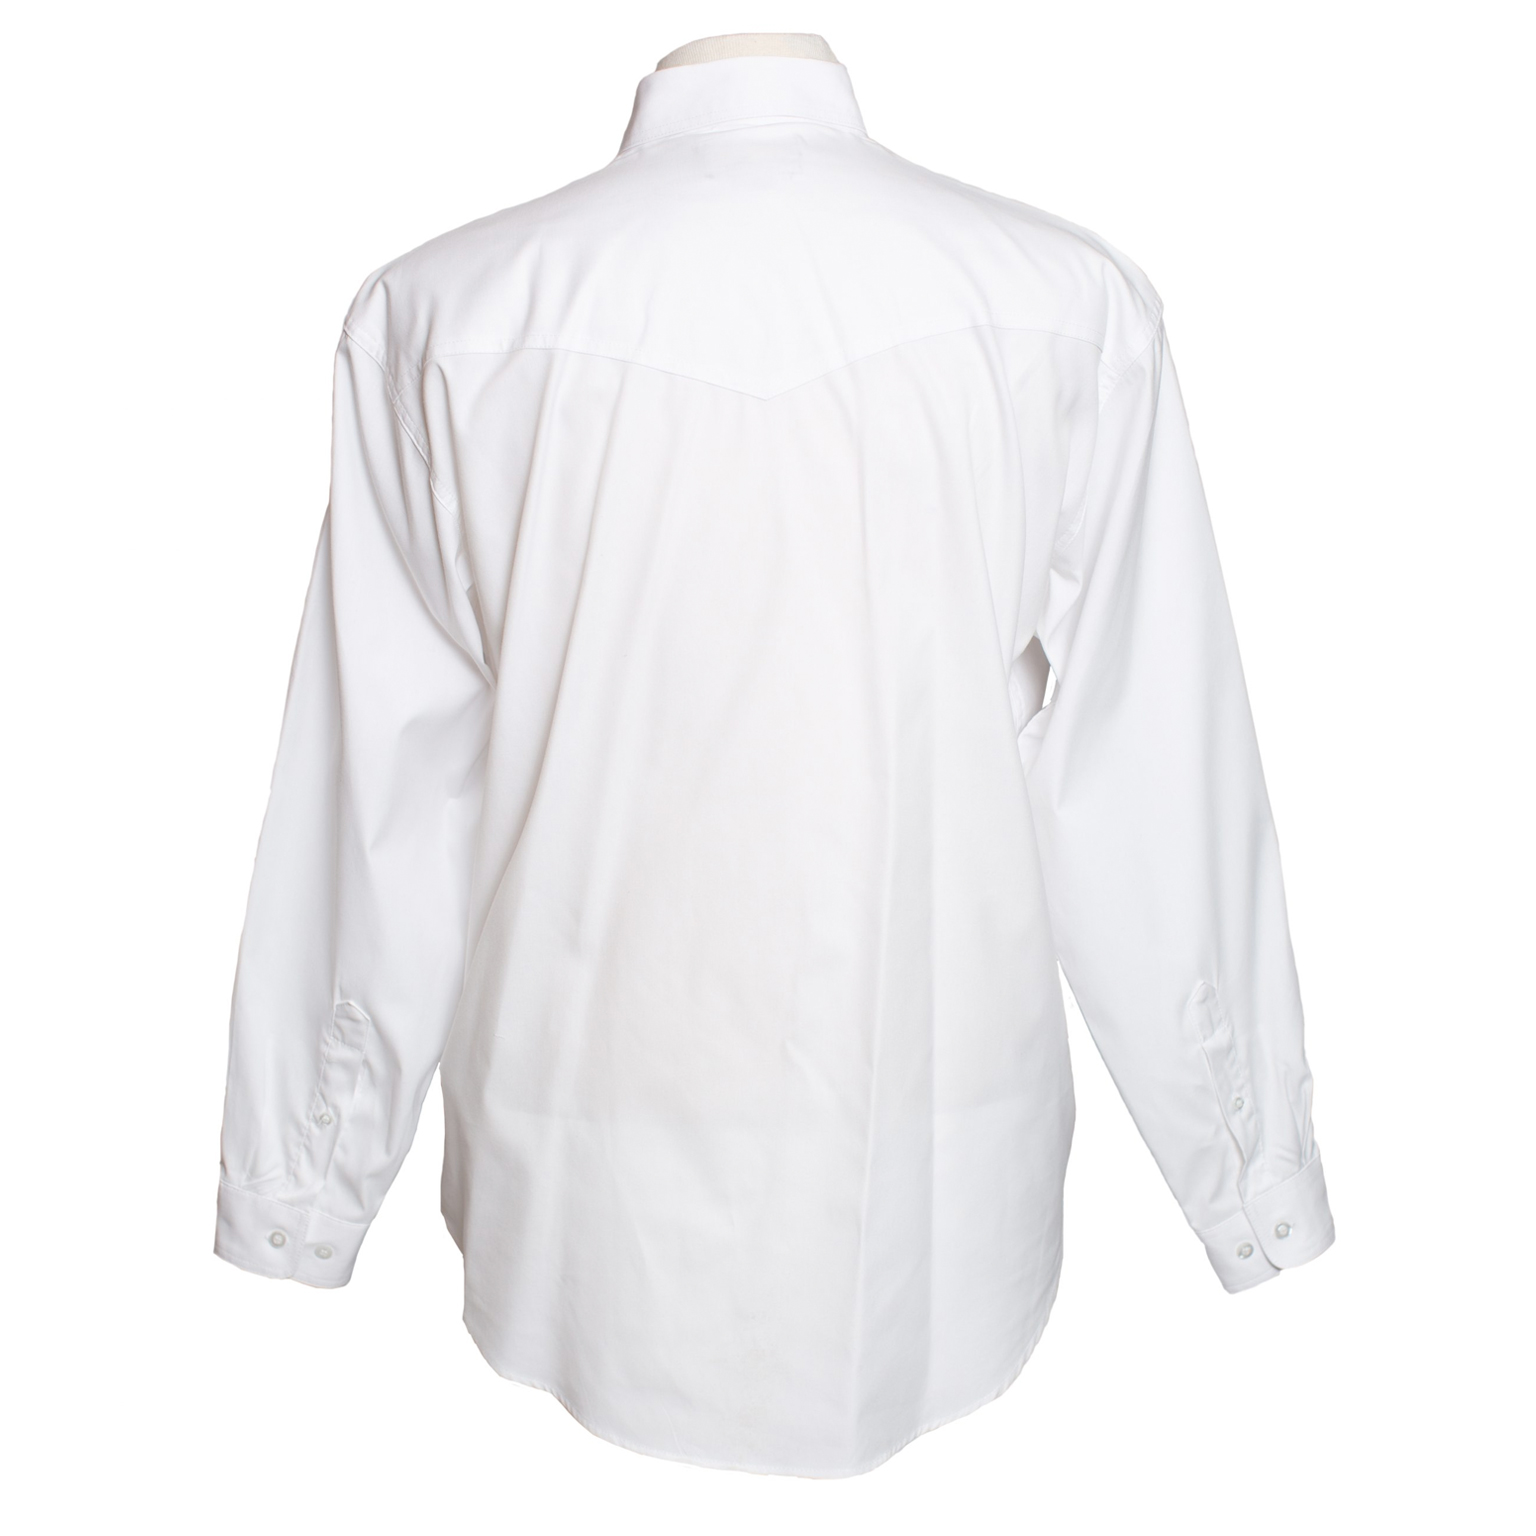 Men’s Dress Western L-Sleeve Button Shirt – Former Texas Rangers Foundation